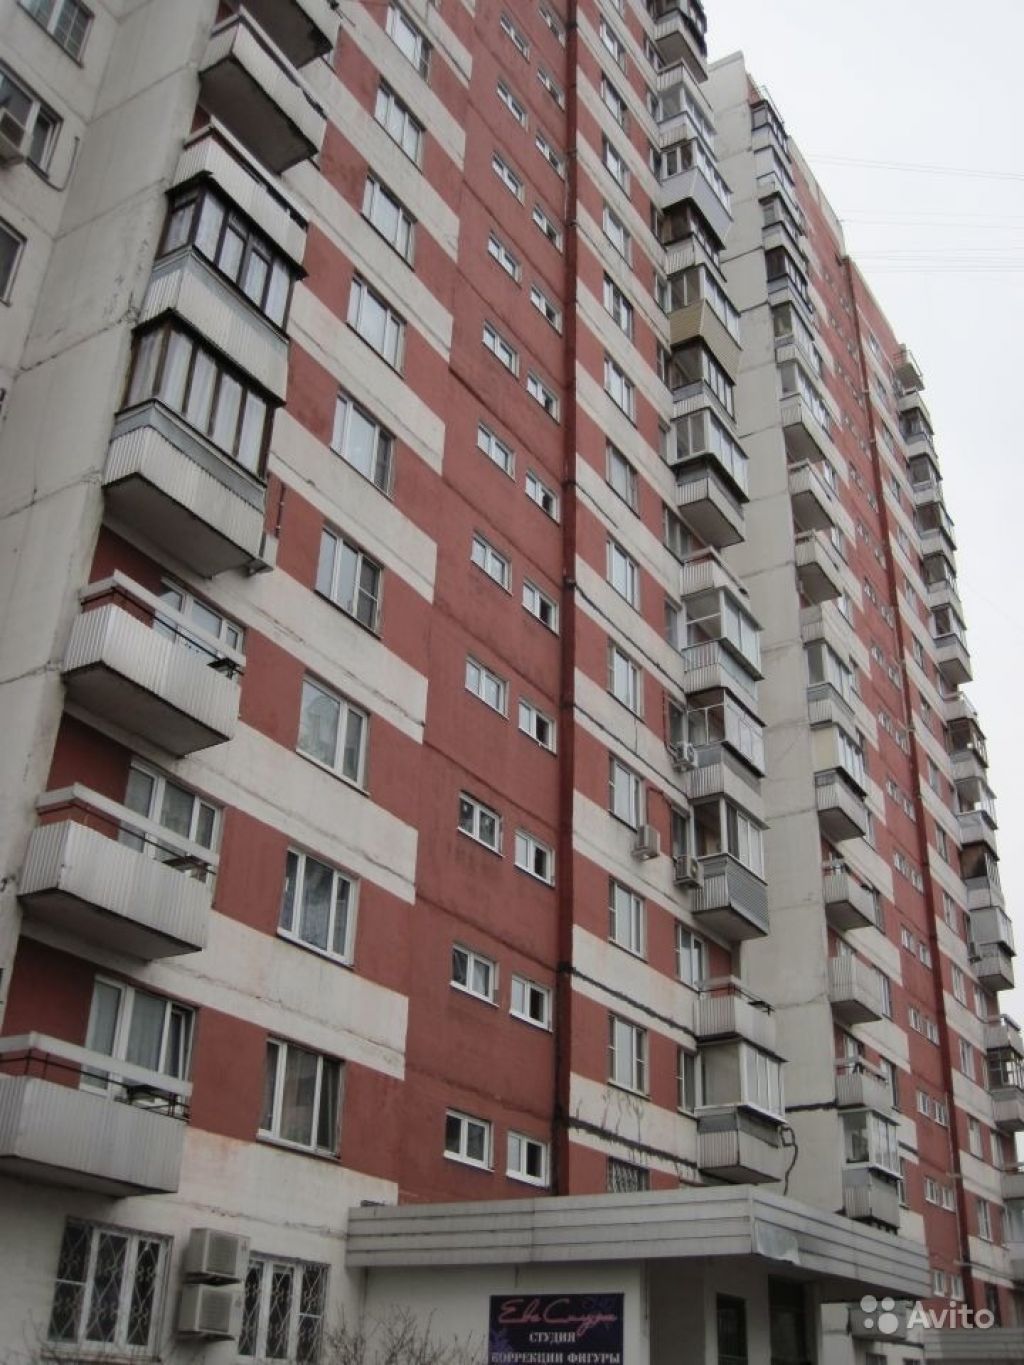 Продам квартиру 2-к квартира 55 м² на 7 этаже 17-этажного панельного дома в Москве. Фото 1